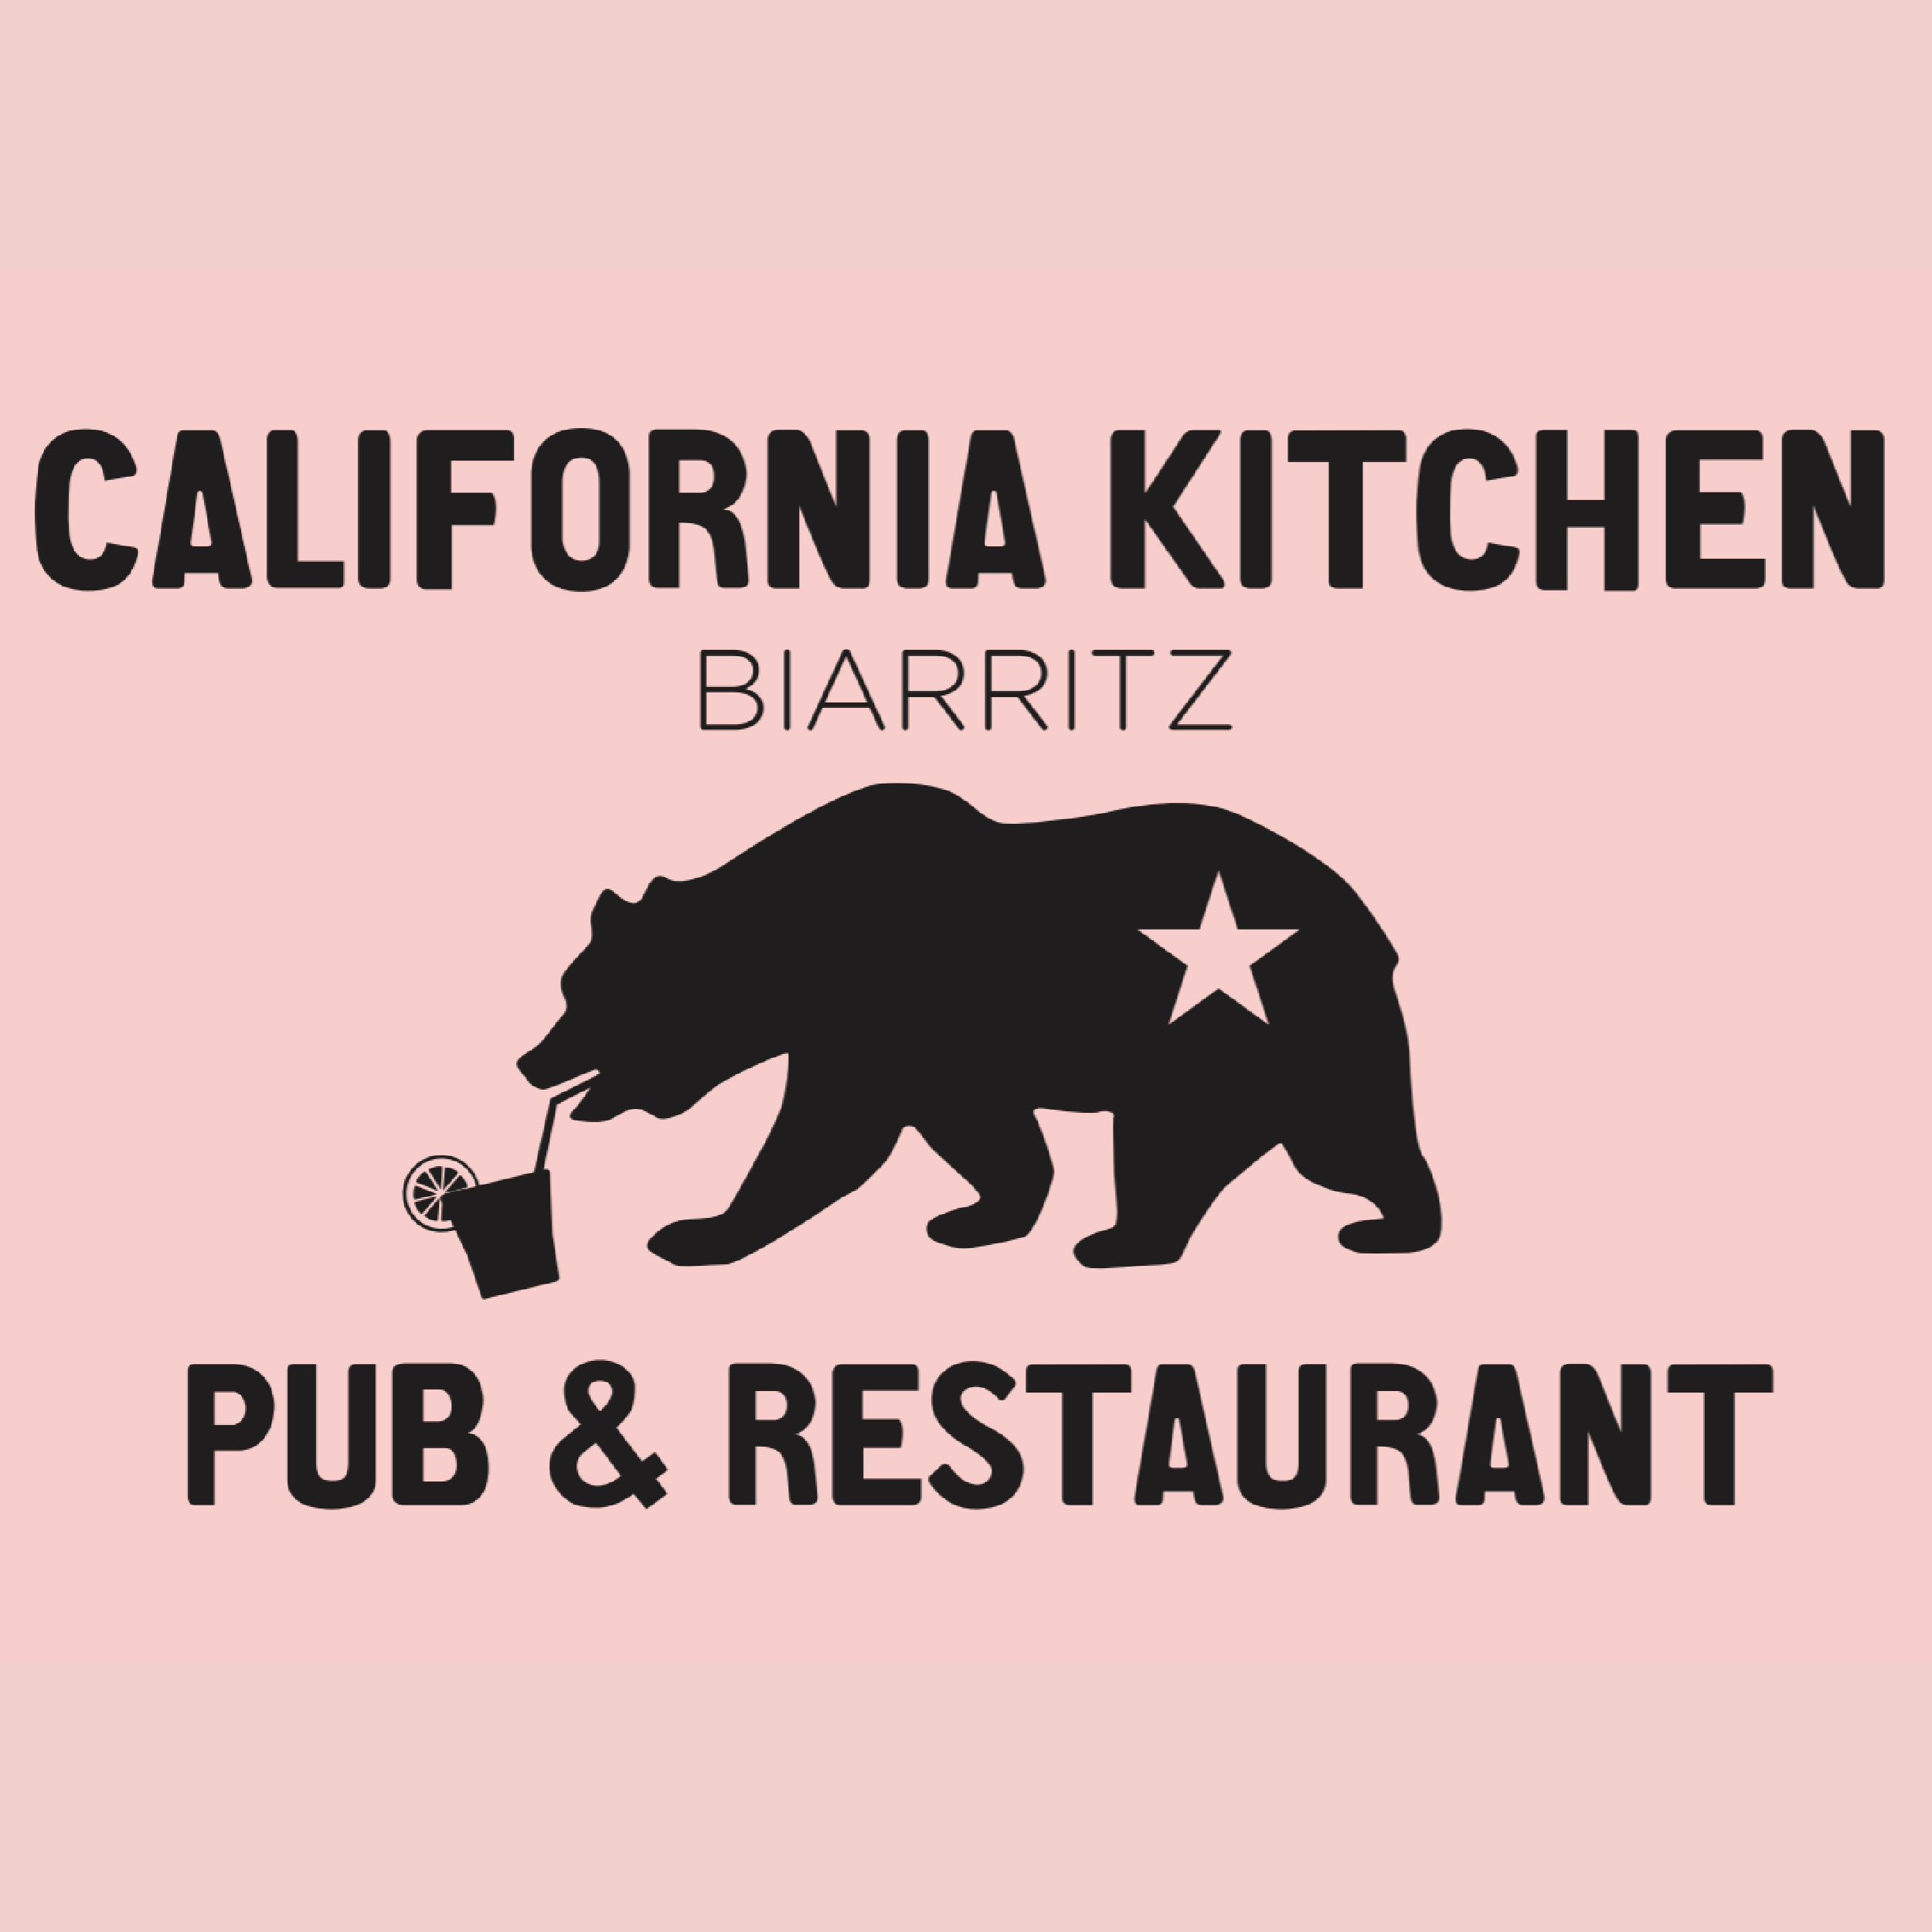 California Kitchen Biarritz rose